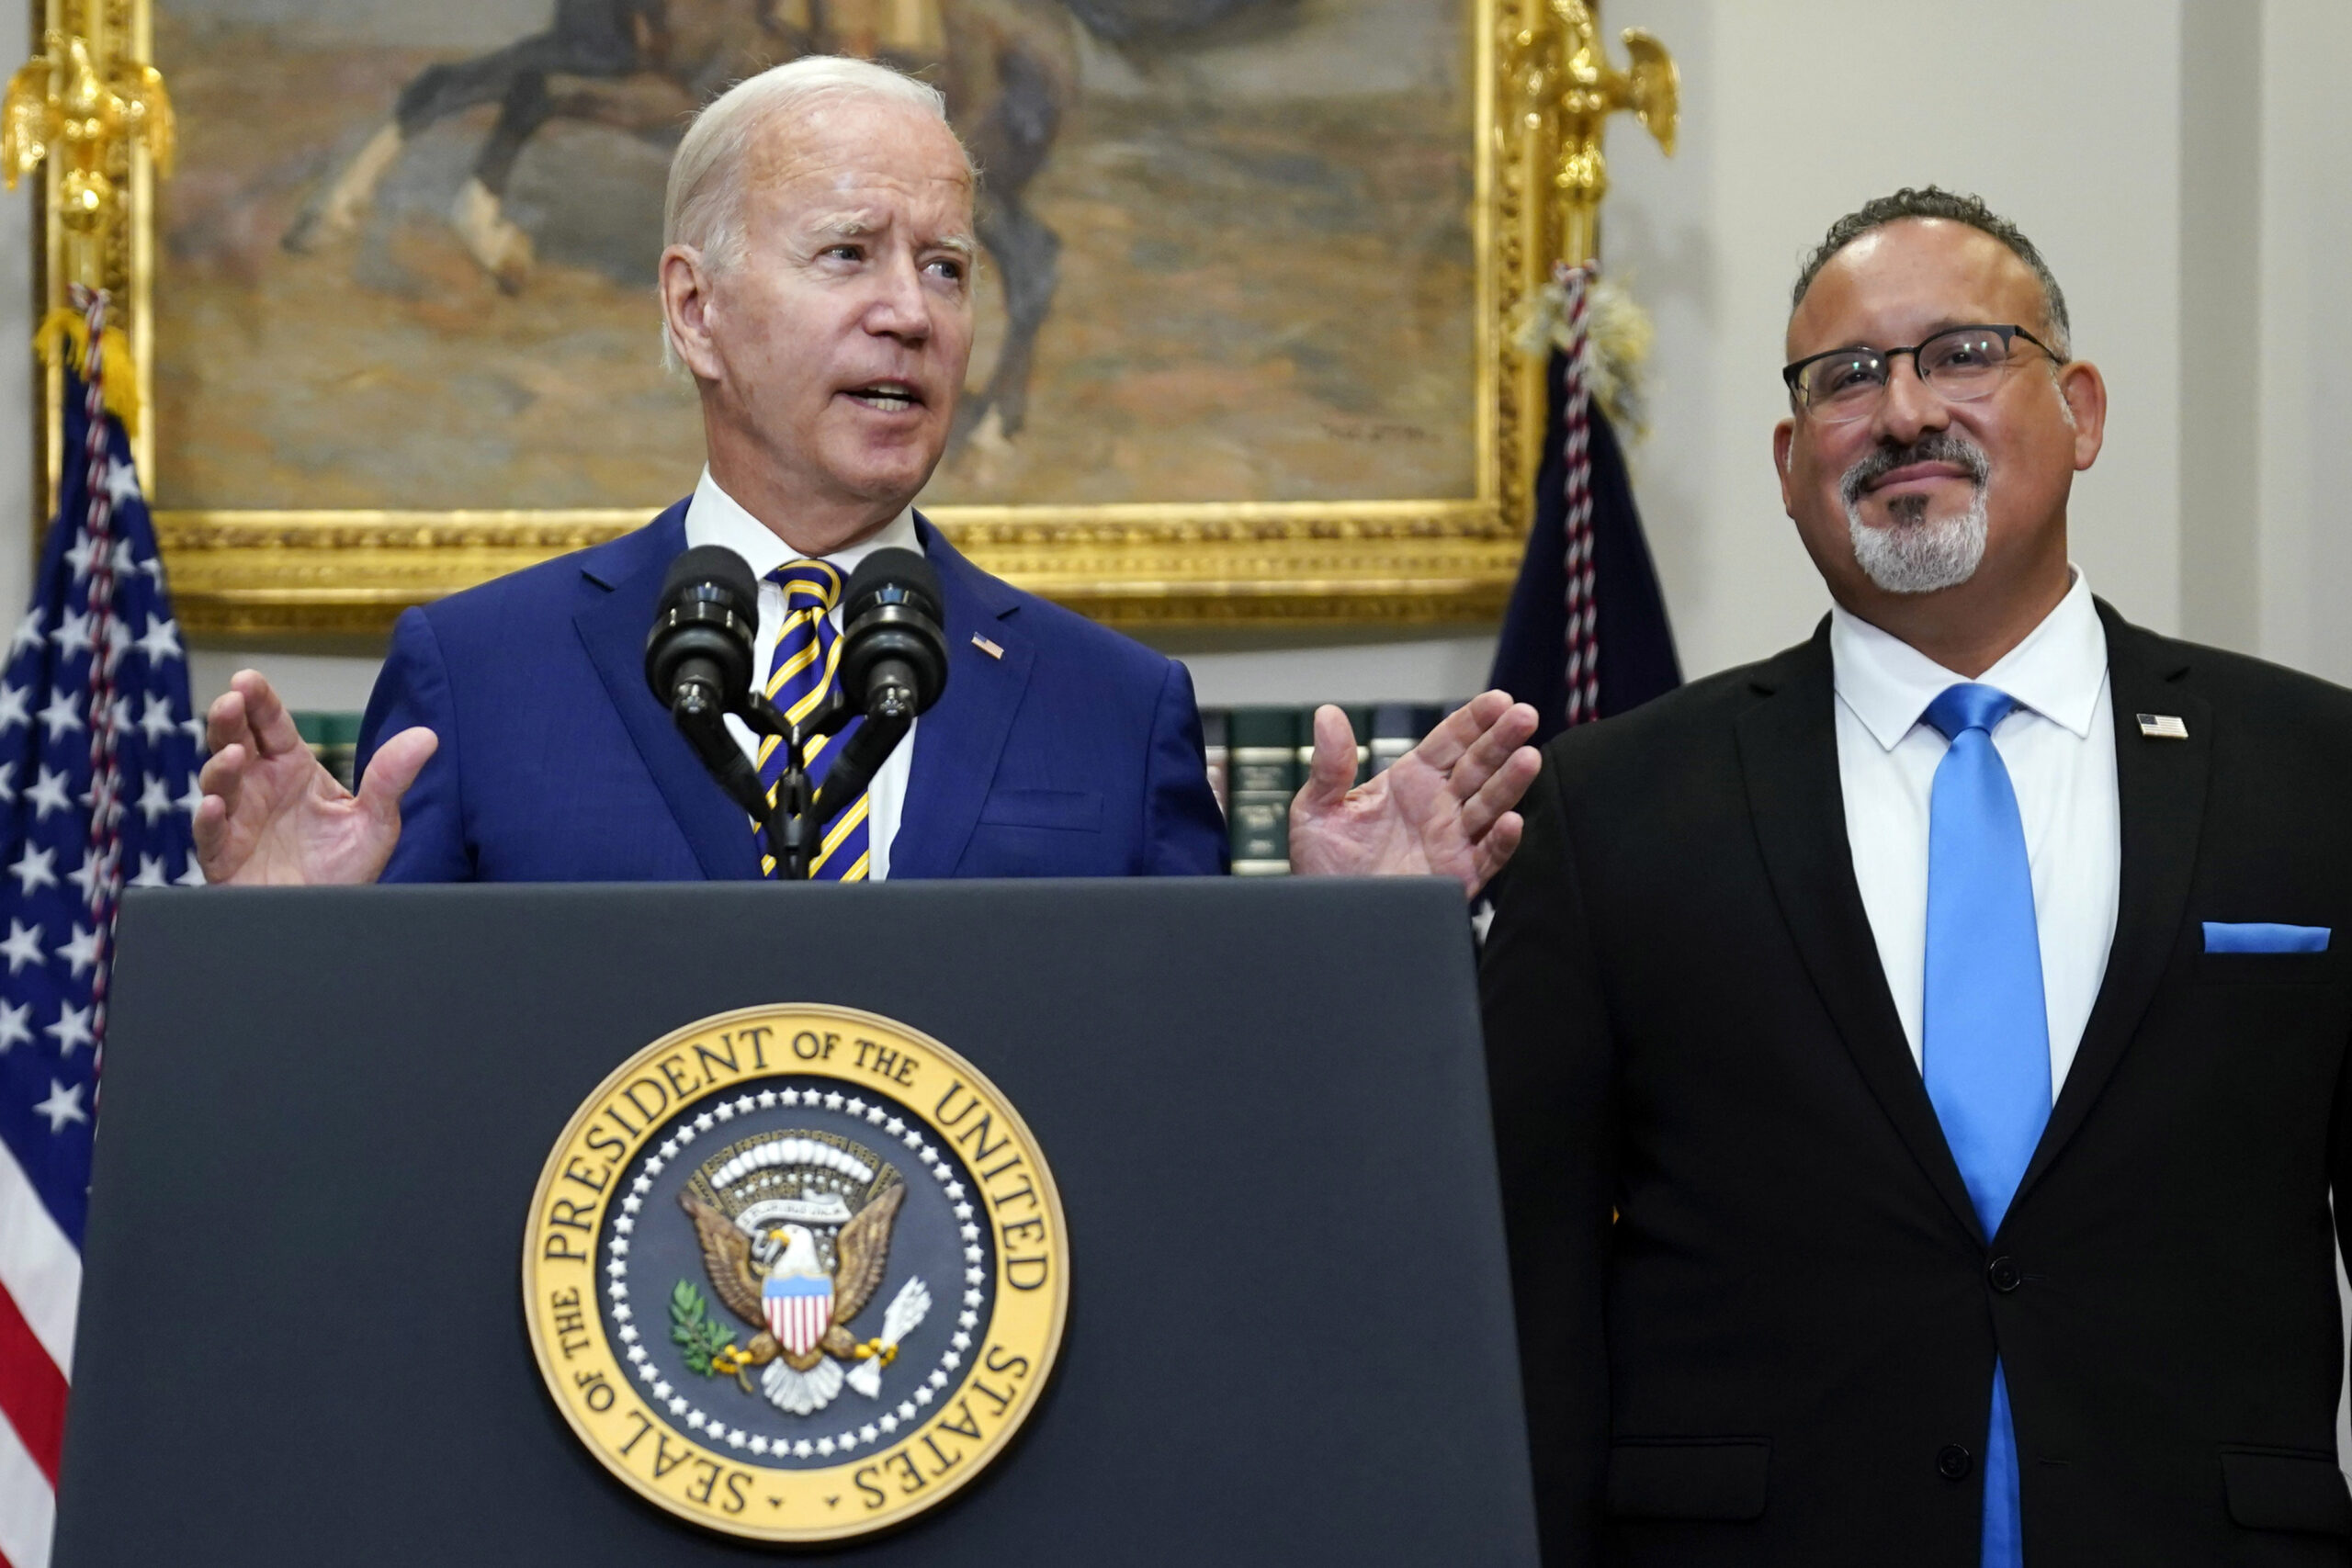 President Joe Biden speaks about student loan debt forgiveness